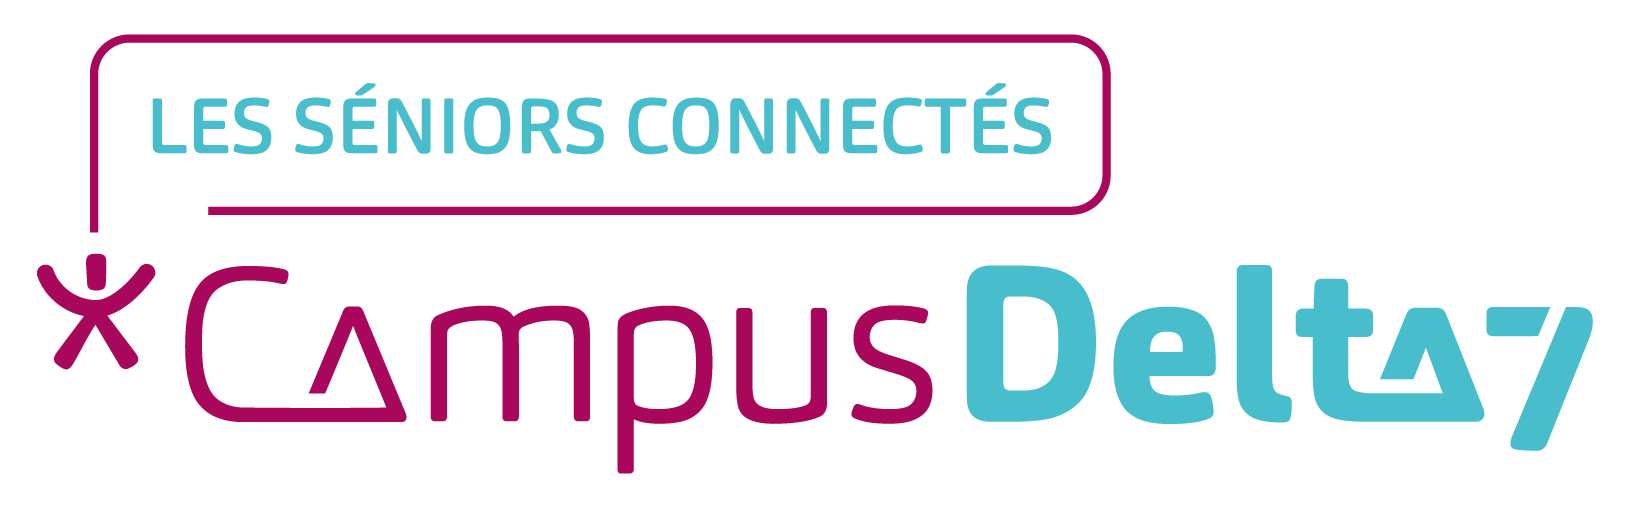 Logo Campus Delta 7